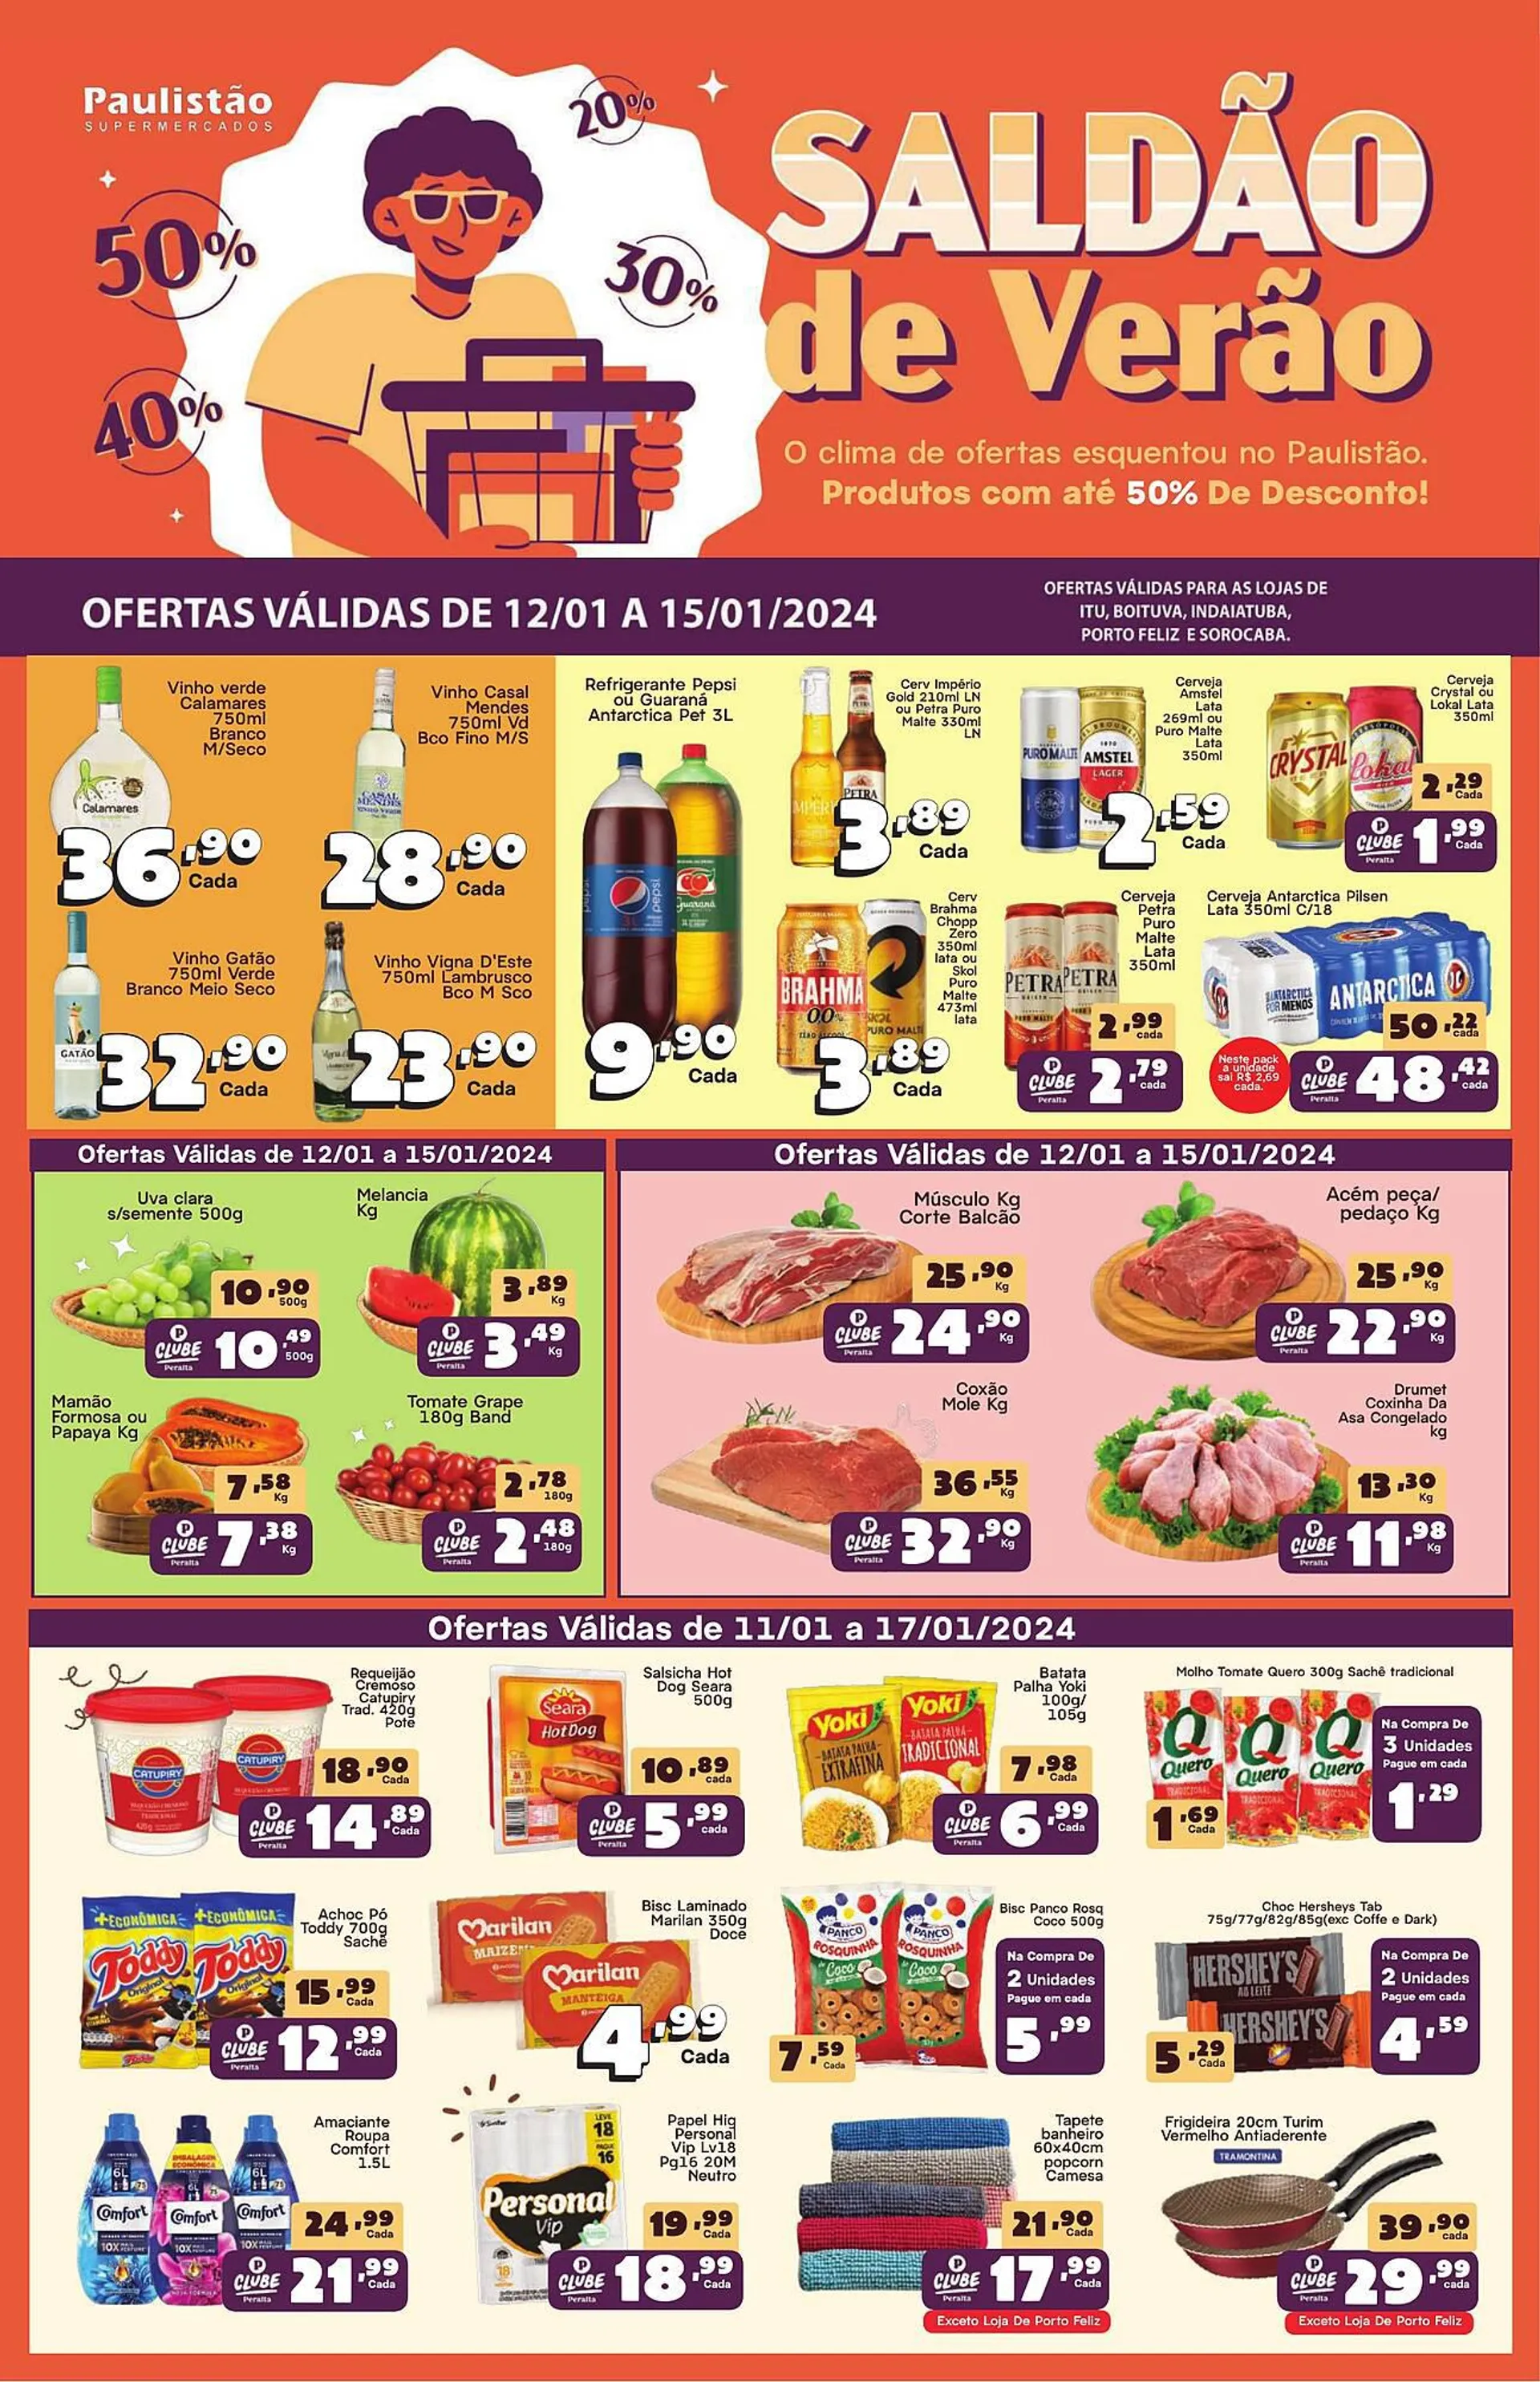 Encarte de Catálogo Paulistão Supermercados 11 de janeiro até 17 de janeiro 2024 - Pagina 1